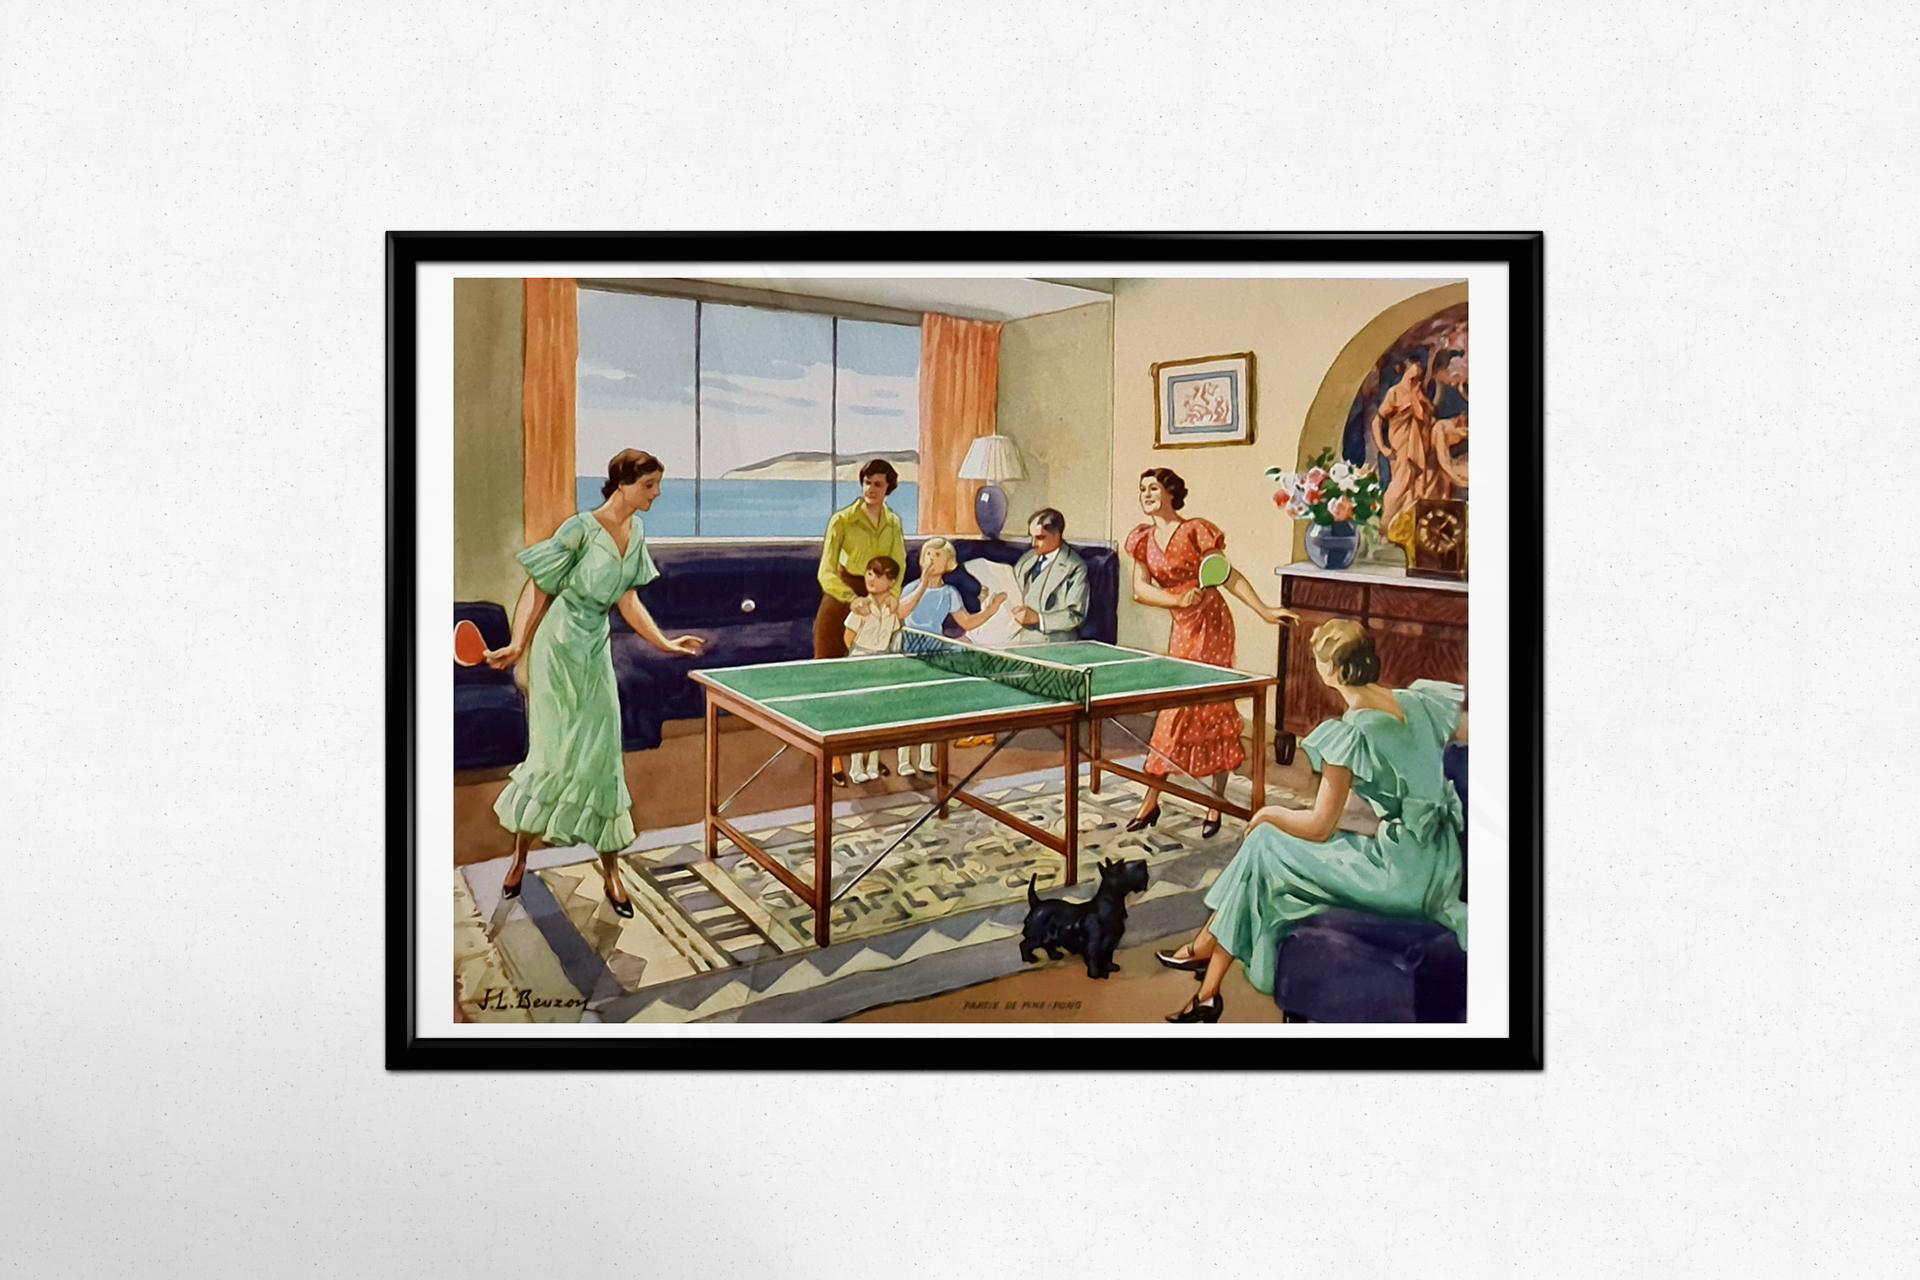 Une affiche attrayante de J.L.A., représentant une partie de ping-pong au milieu des années 1930. Les dames sont élégamment vêtues pour une partie de tennis de table.

On pense que le tennis de table est né en Angleterre à la fin du 19e